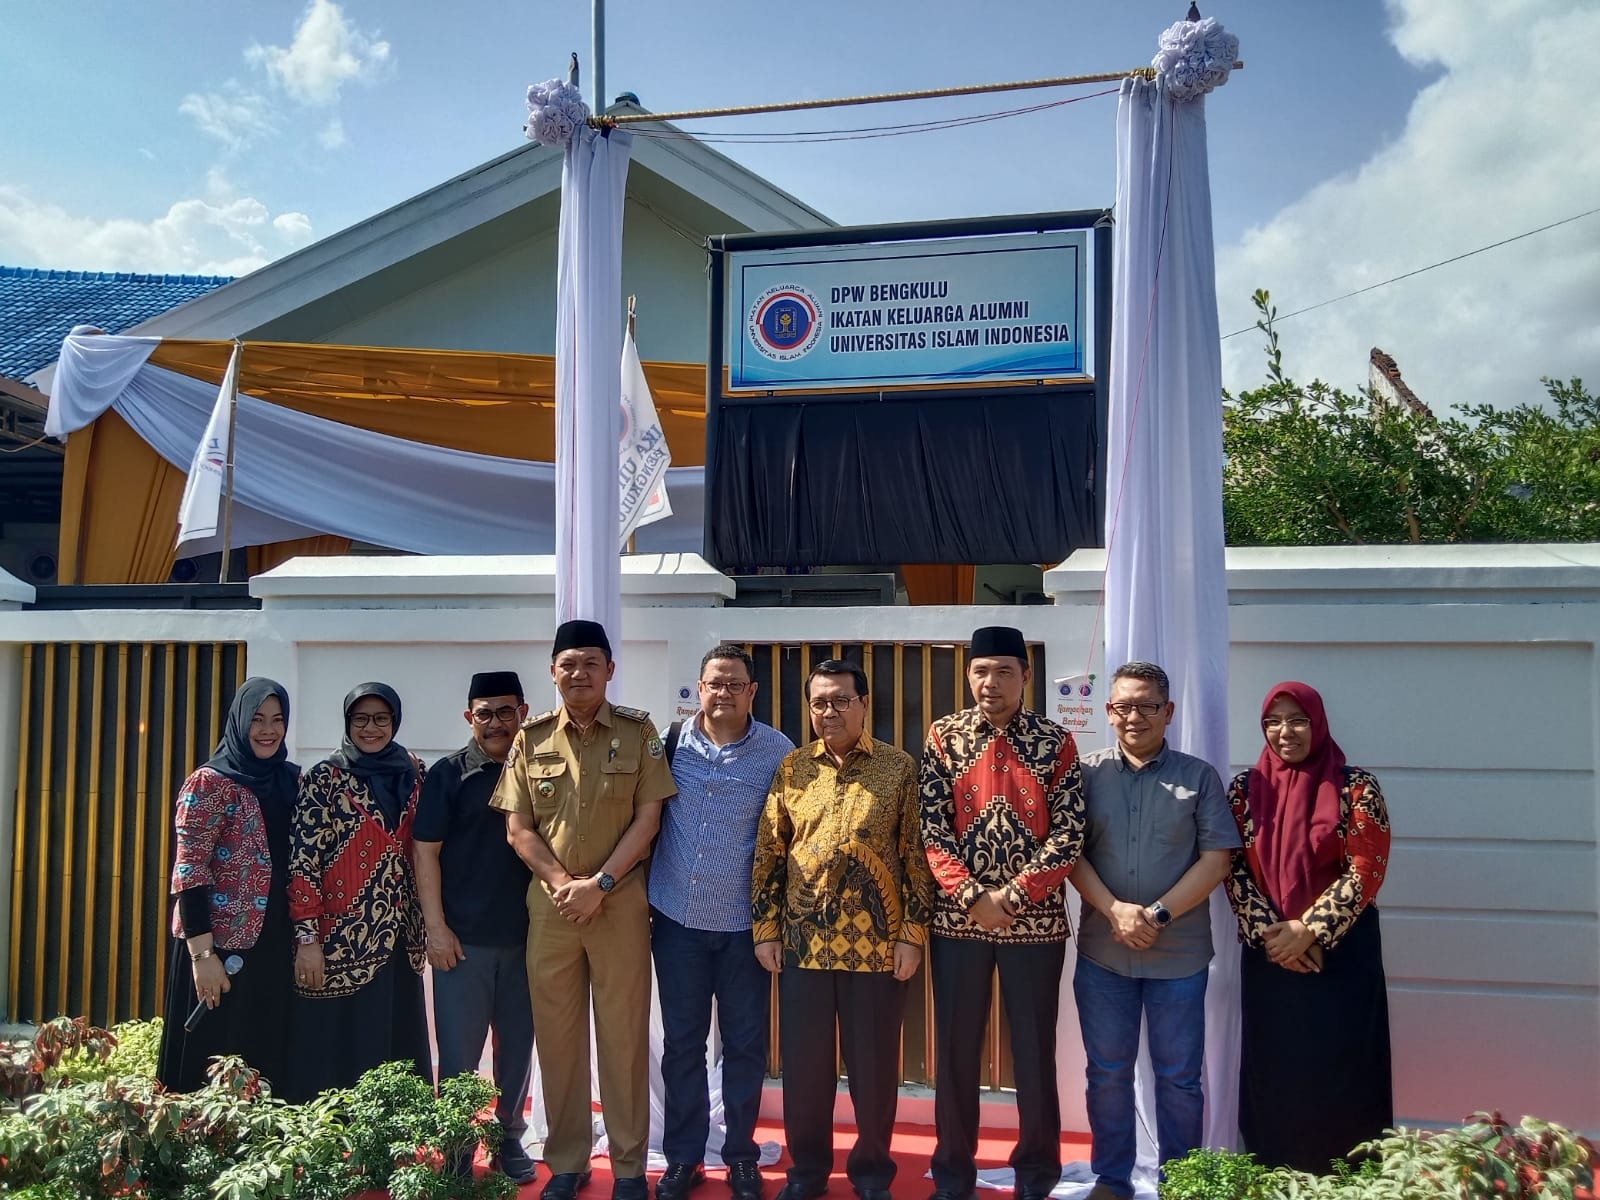  IKA UII DPW Bengkulu Harus Berkontribusi Memajukan Provinsi Bengkulu